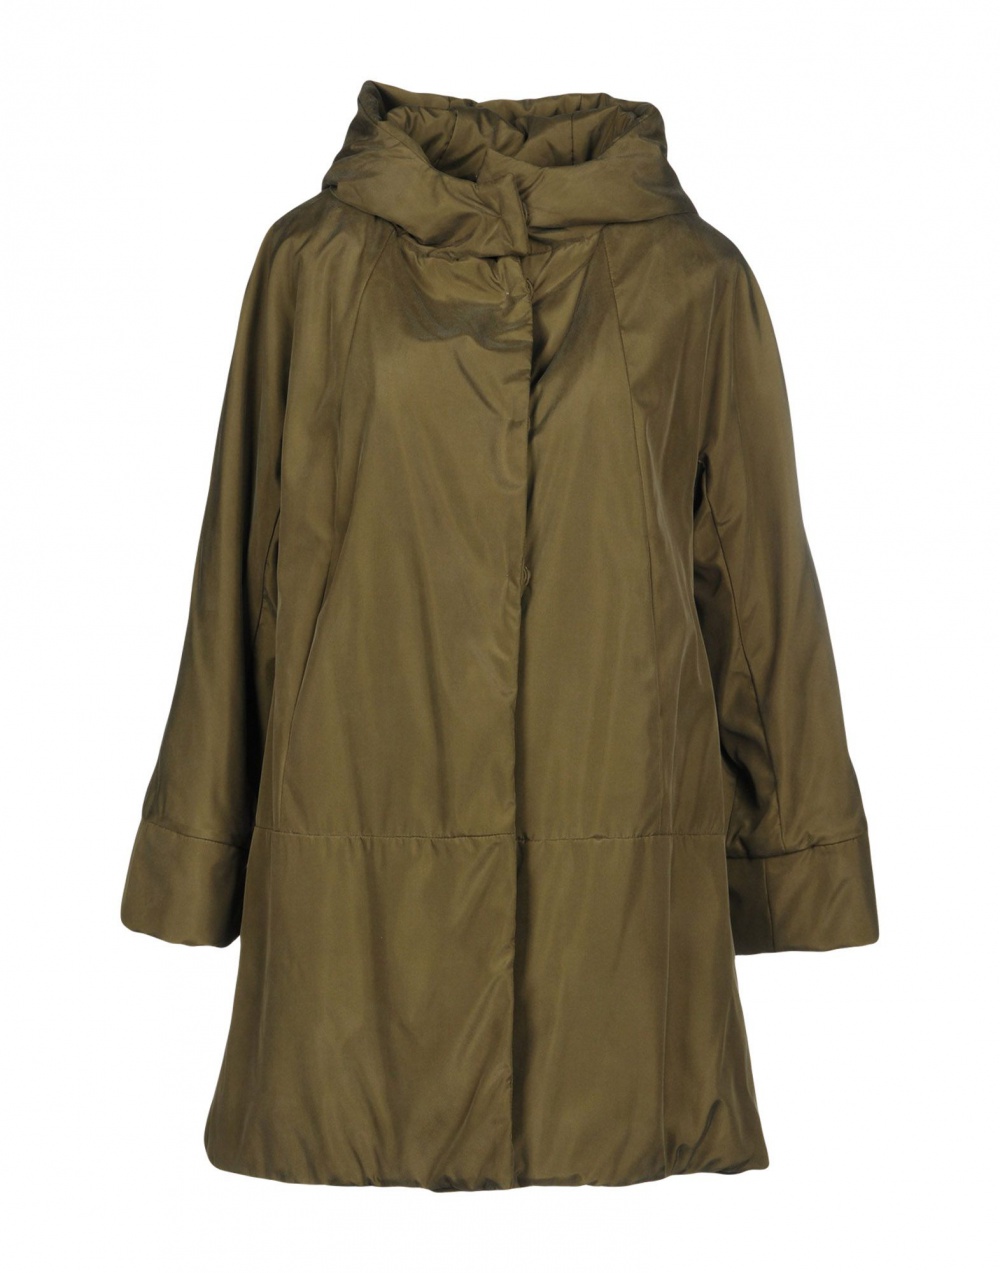 Шелковая куртка Cocoon на синтепоне размер L